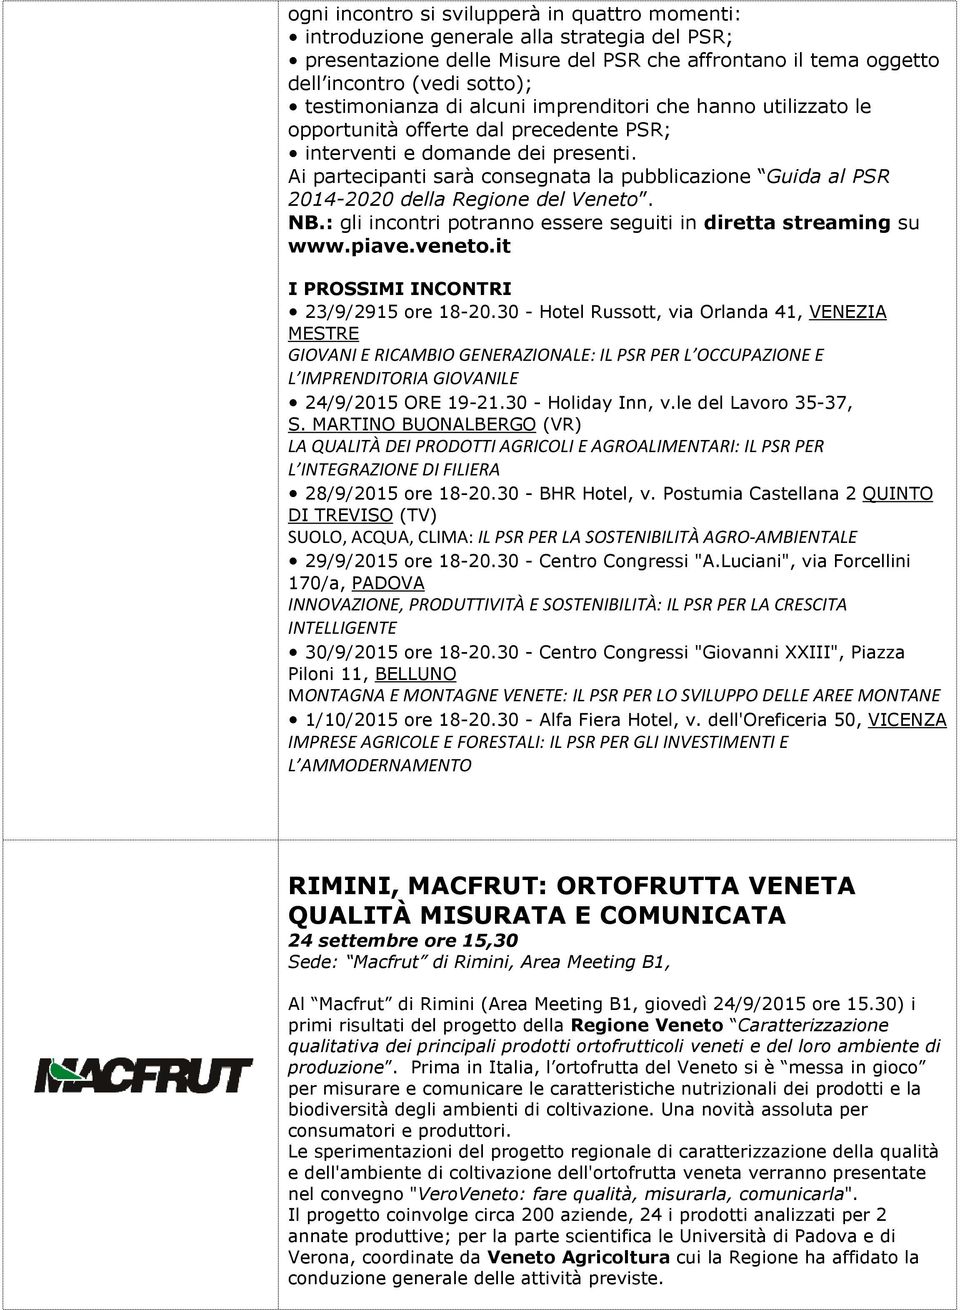 Ai partecipanti sarà consegnata la pubblicazione Guida al PSR 2014-2020 della Regione del Veneto. NB.: gli incontri potranno essere seguiti in diretta streaming su www.piave.veneto.